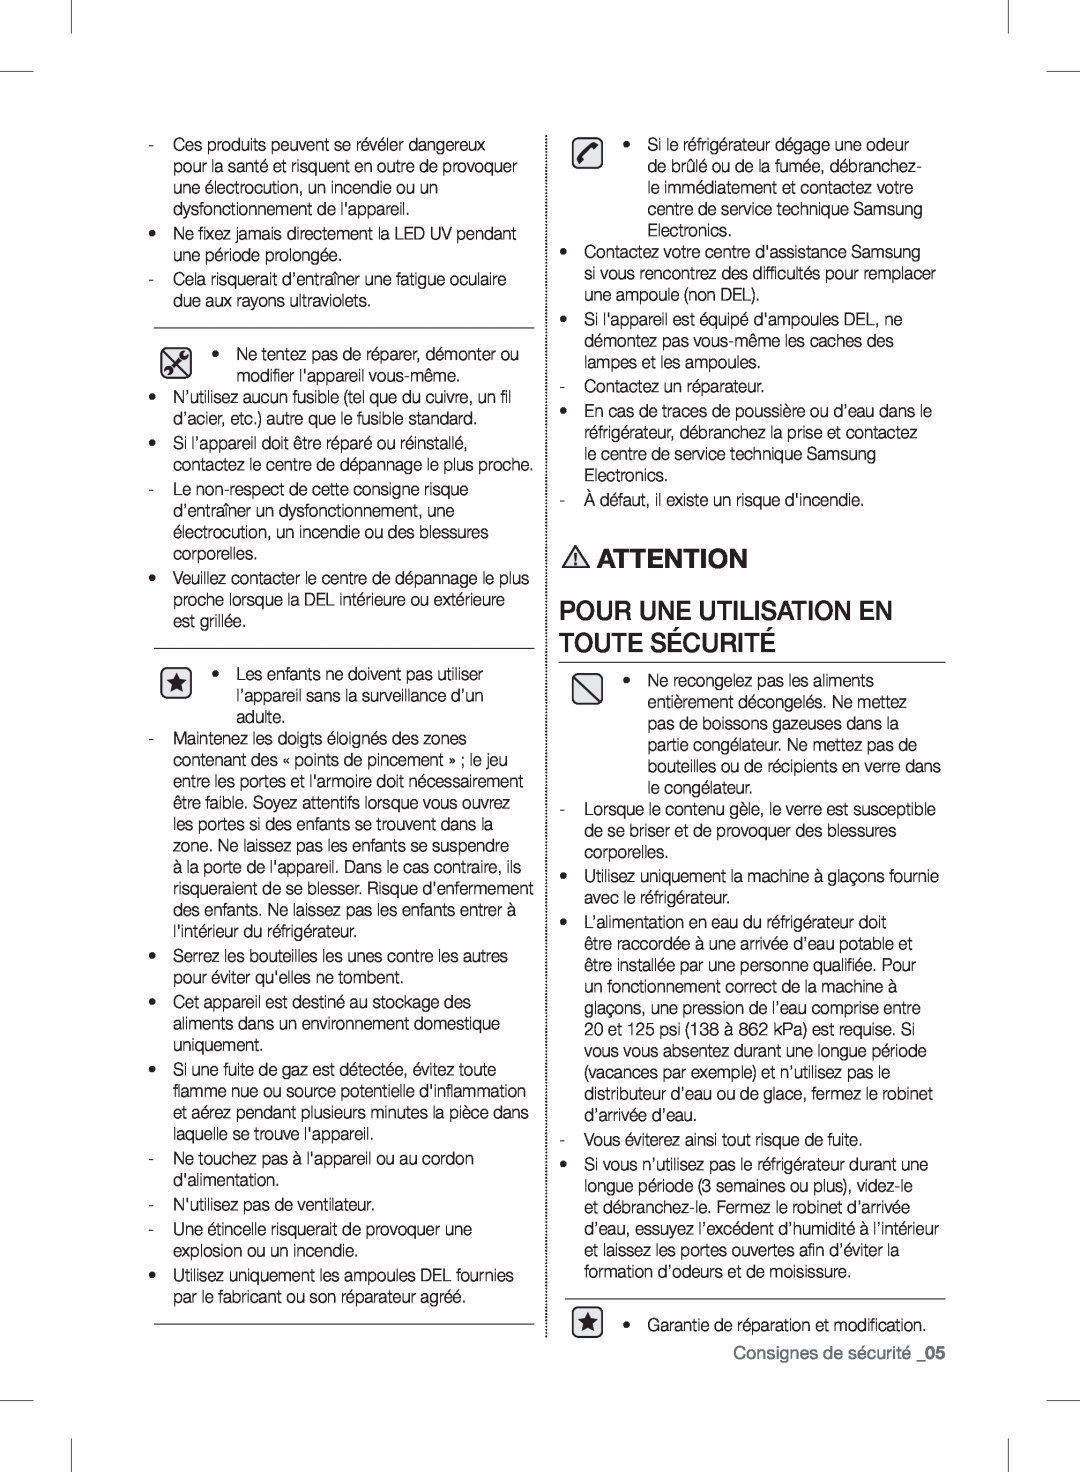 Samsung RF24FSEDBSR user manual Pour Une Utilisation En Toute Sécurité, Consignes de sécurité _05 